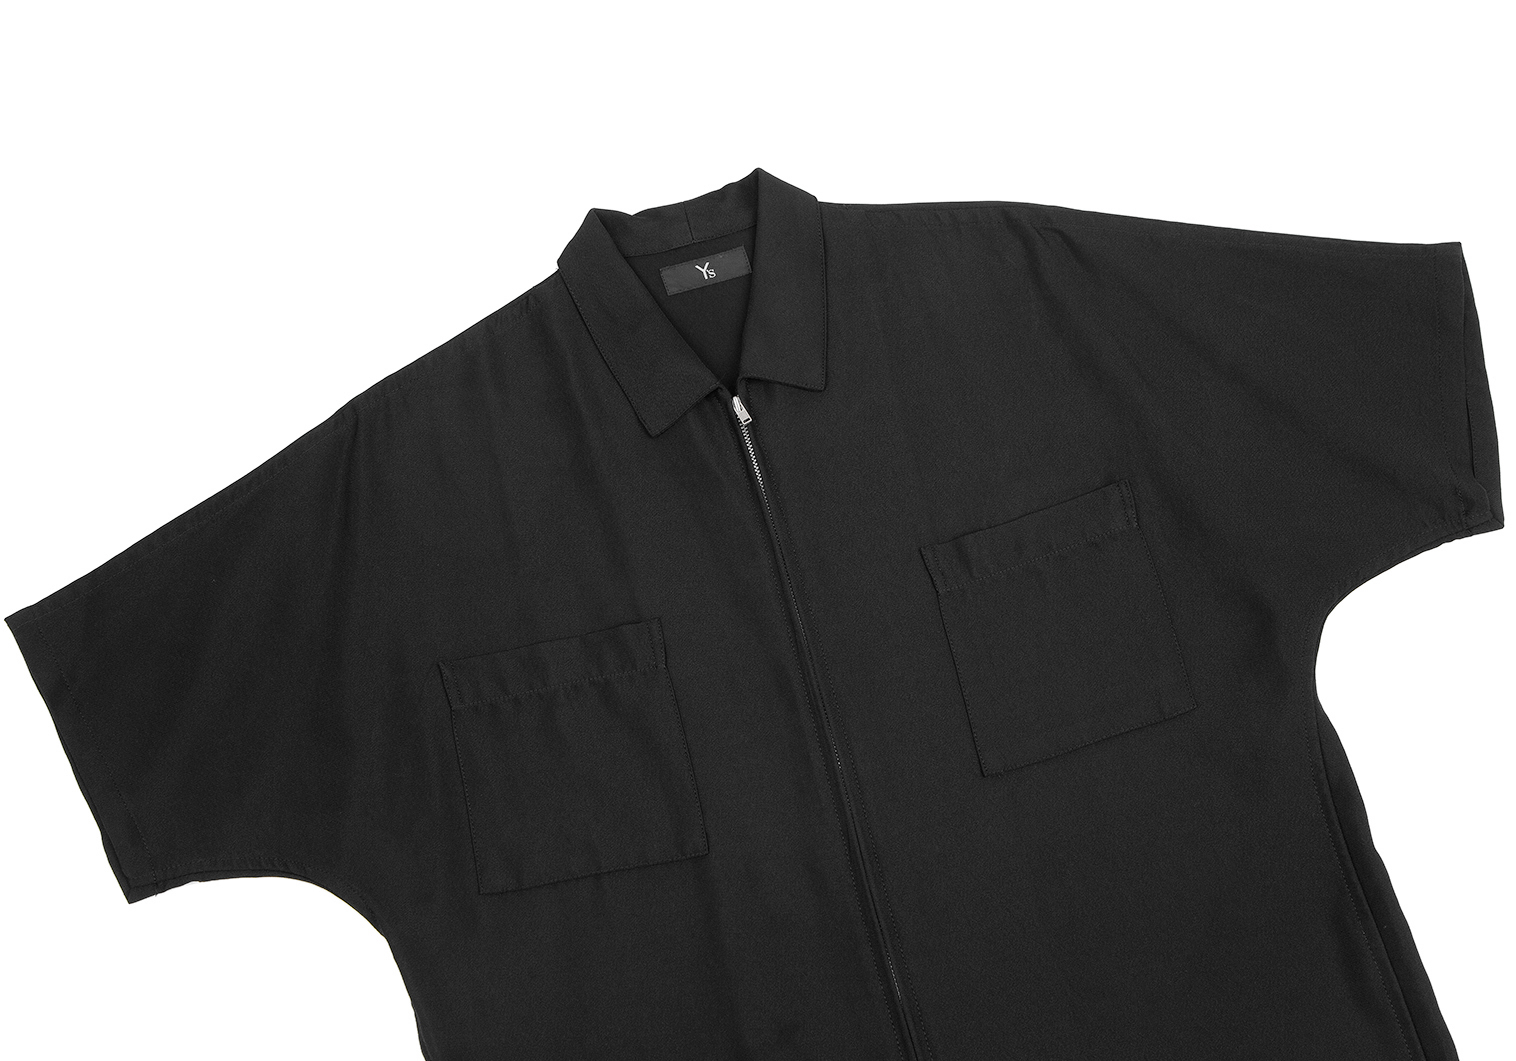 ワイズY's ジップアップドルマンスリーブ半袖シャツ 黒M位